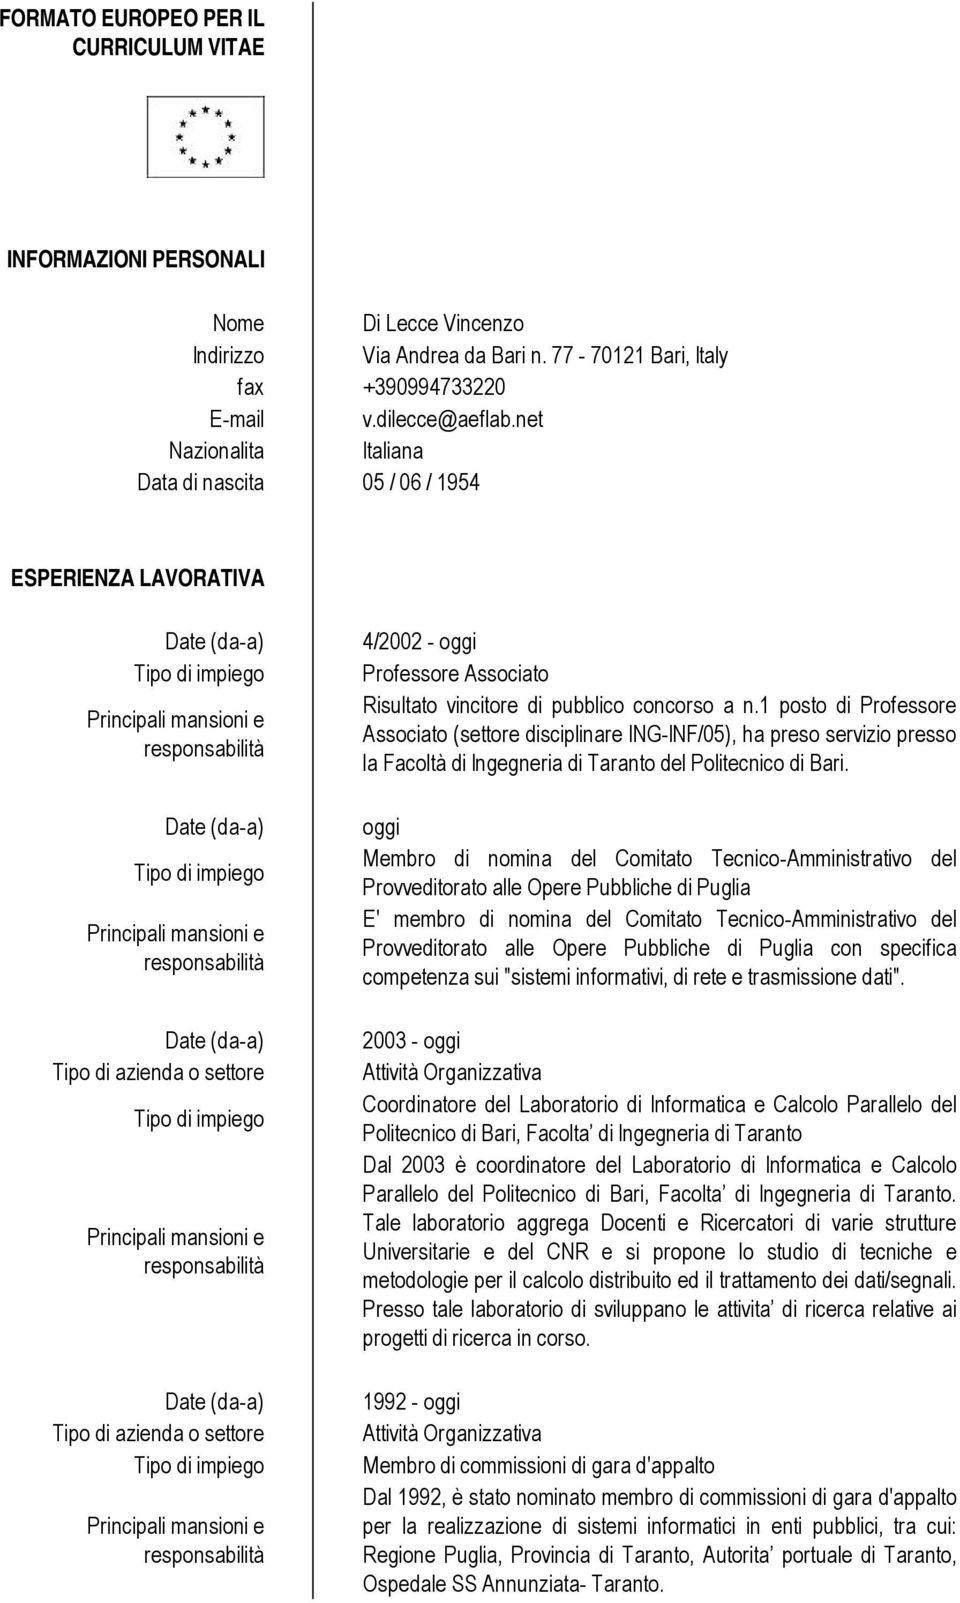 1 posto di Professore Associato (settore disciplinare ING-INF/05), ha preso servizio presso la Facoltà di Ingegneria di Taranto del Politecnico di Bari.